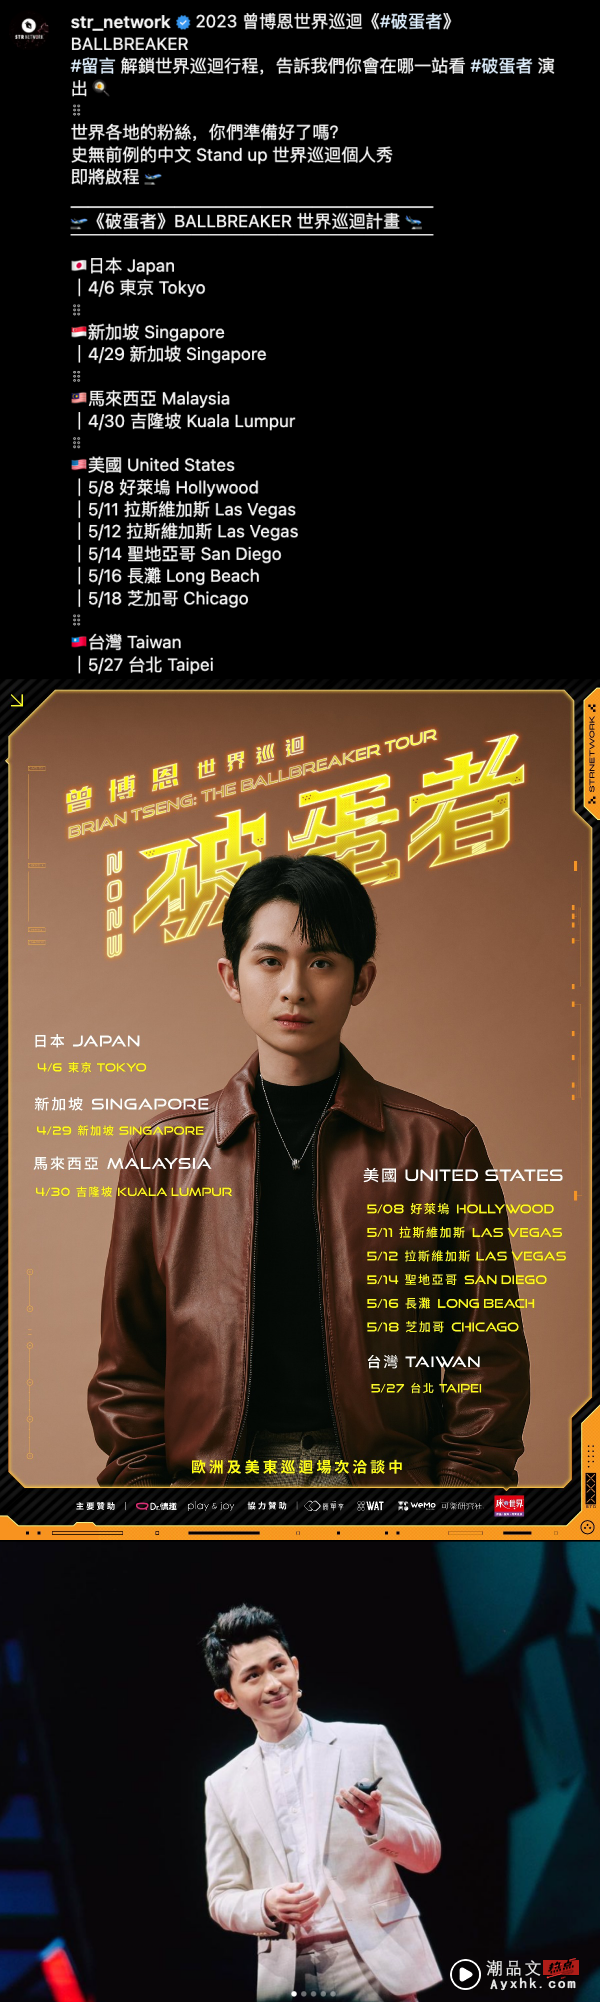 中国台湾脱口秀演员博恩展开世界巡演！马来西亚站落在这个月 娱乐资讯 图2张